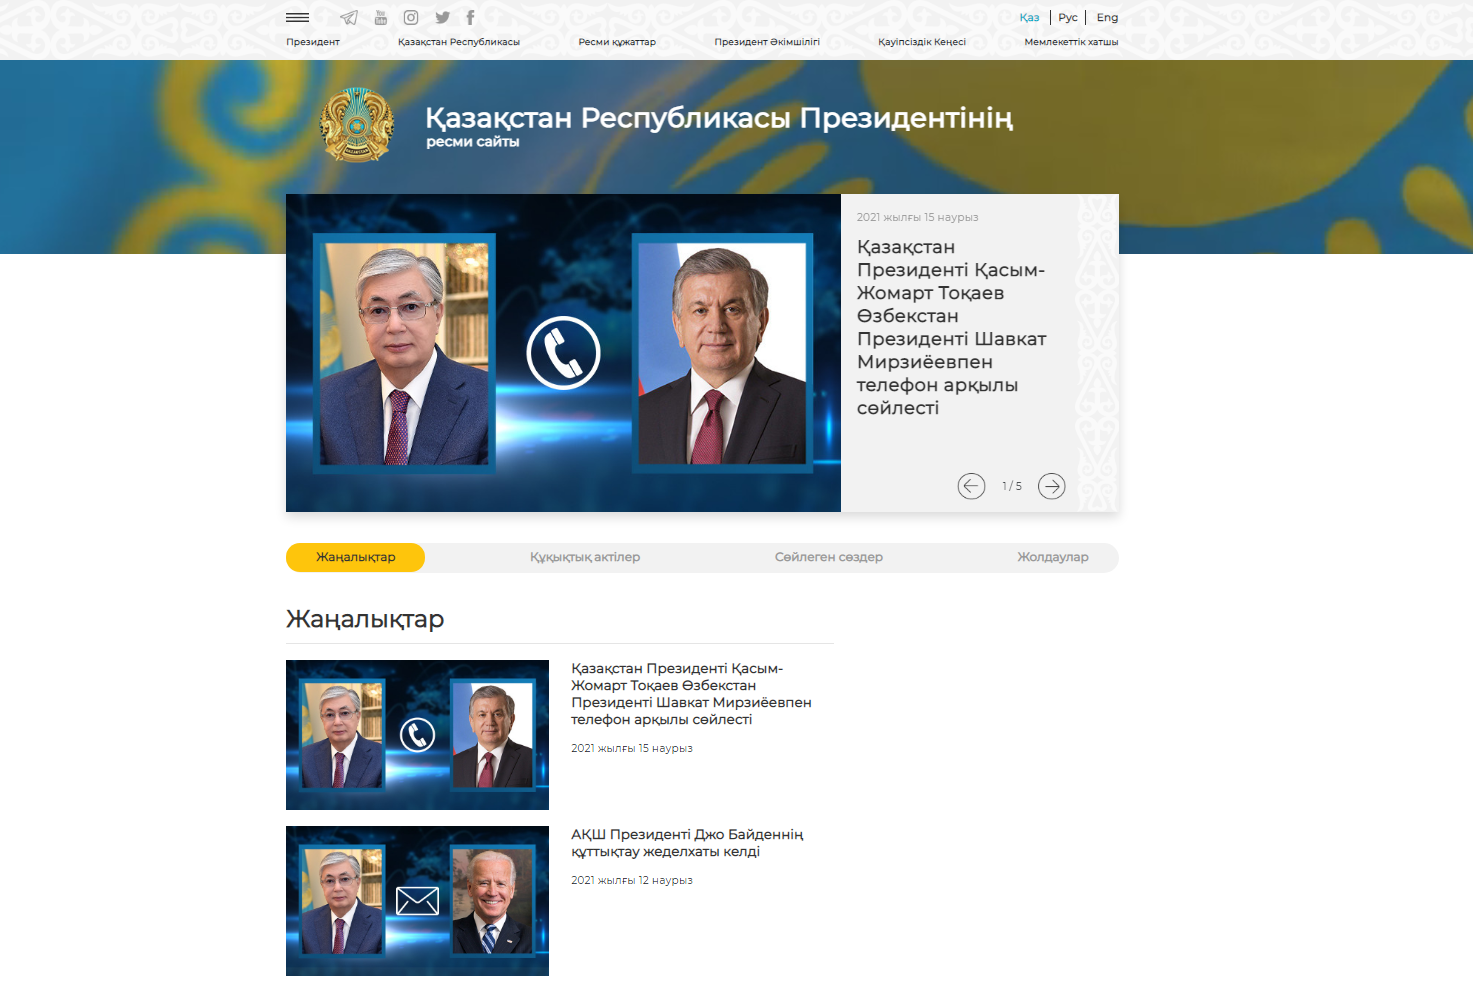 Официальный сайт Президента Казахстана запущен в новом формате